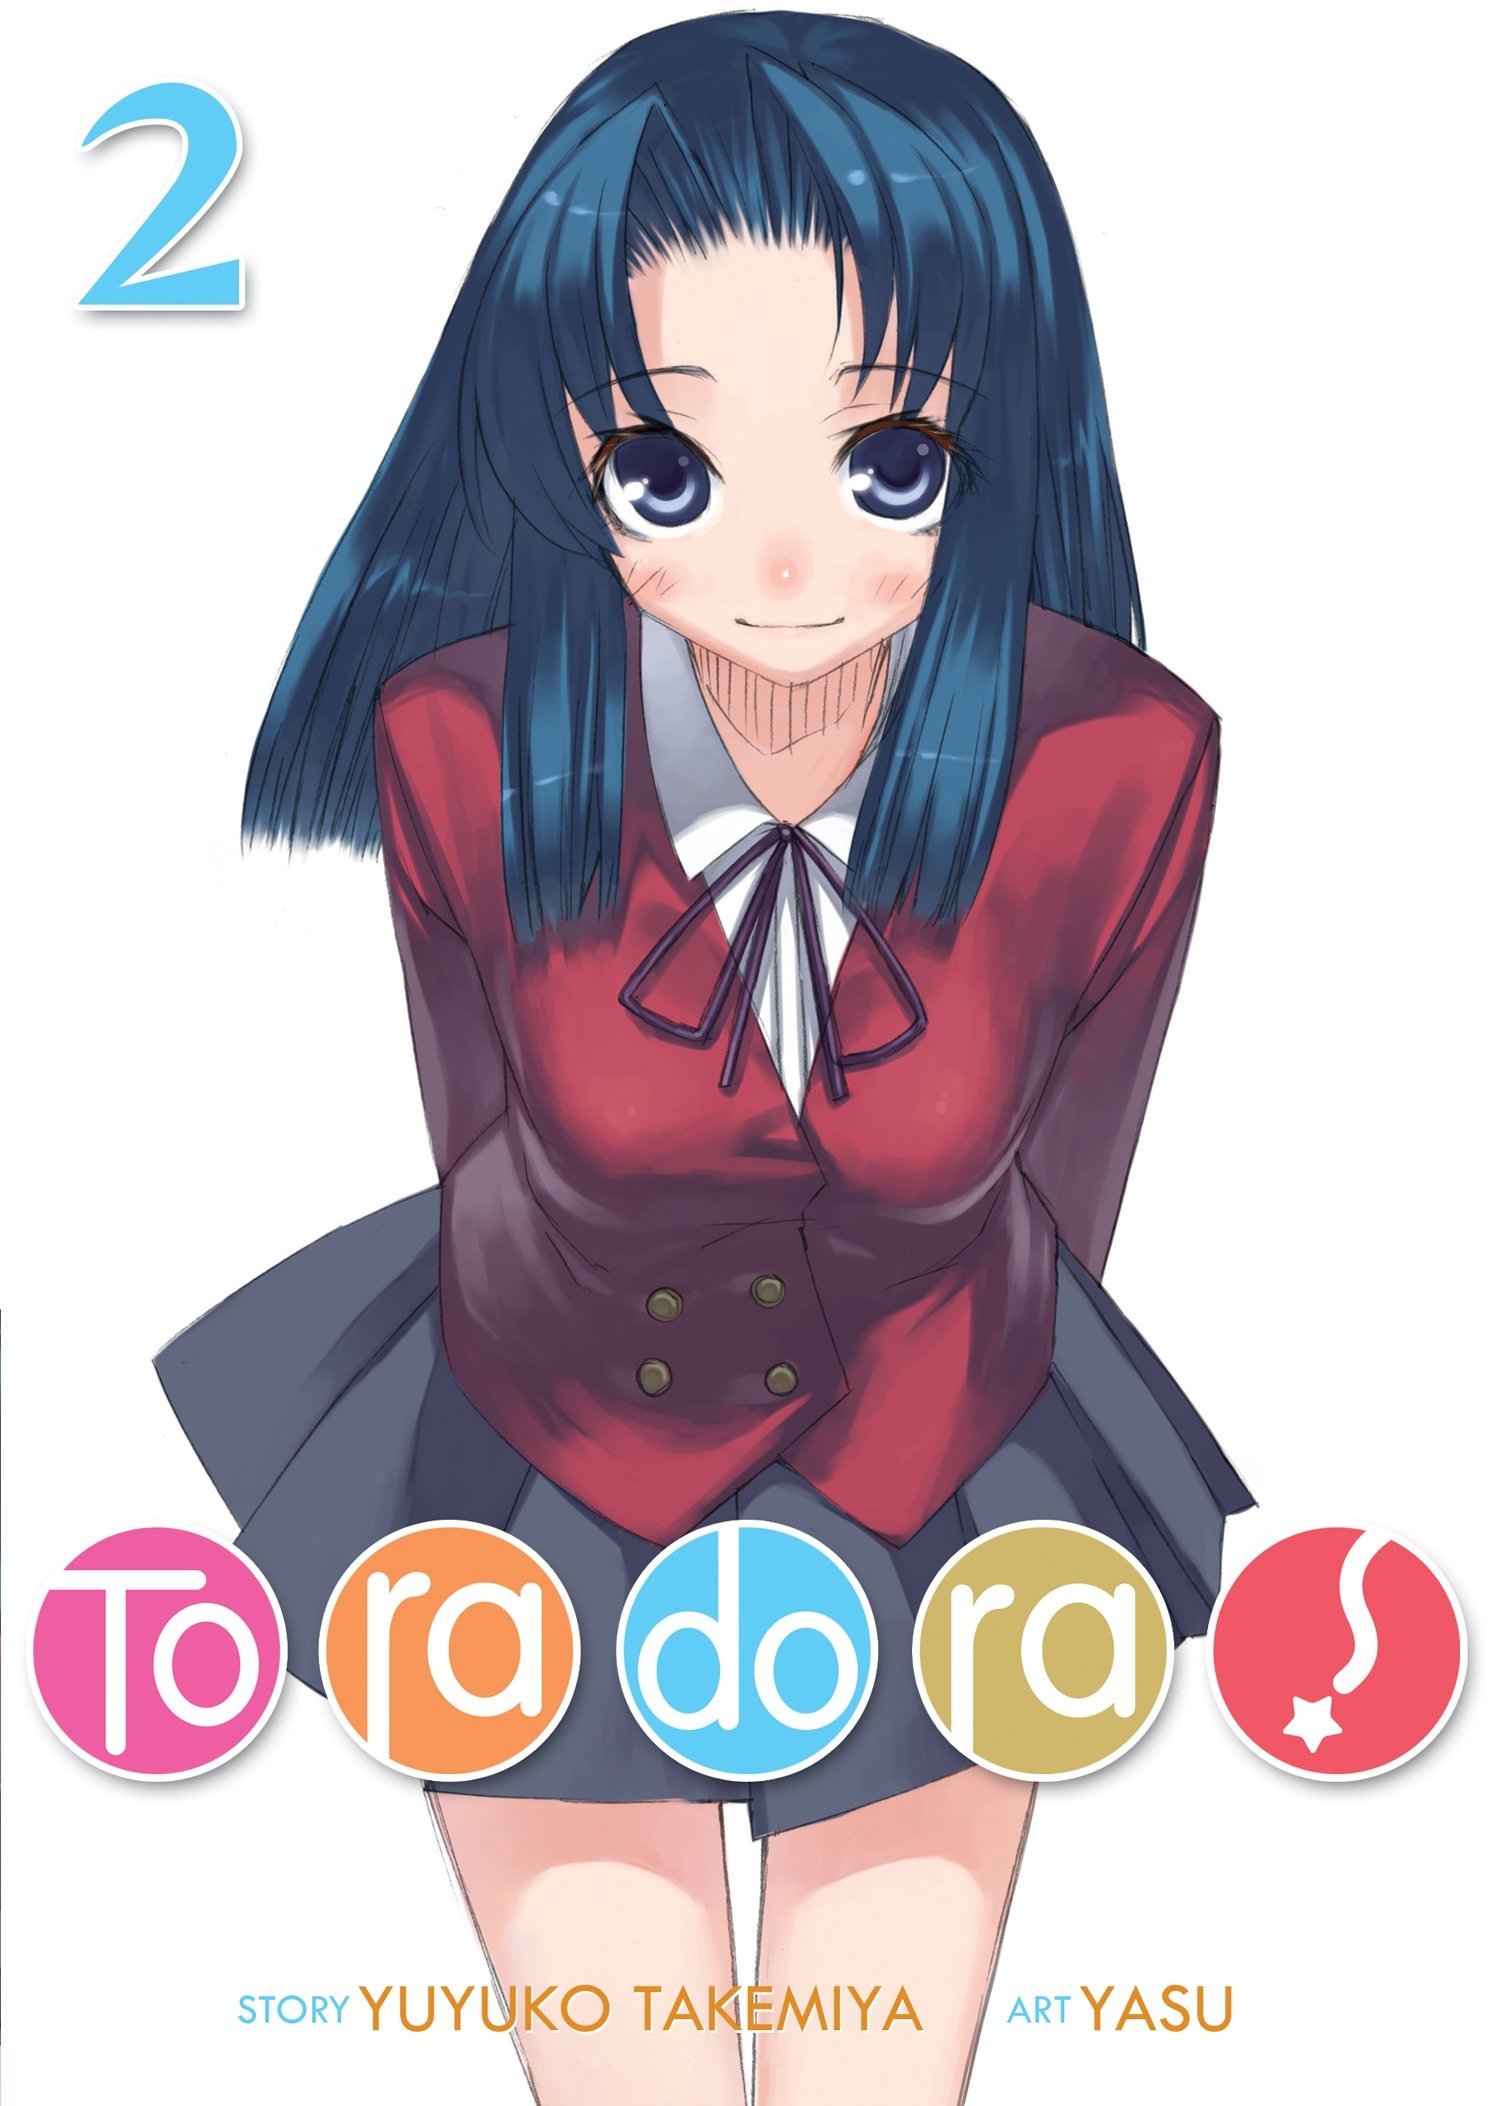 Toradora season 2 manga